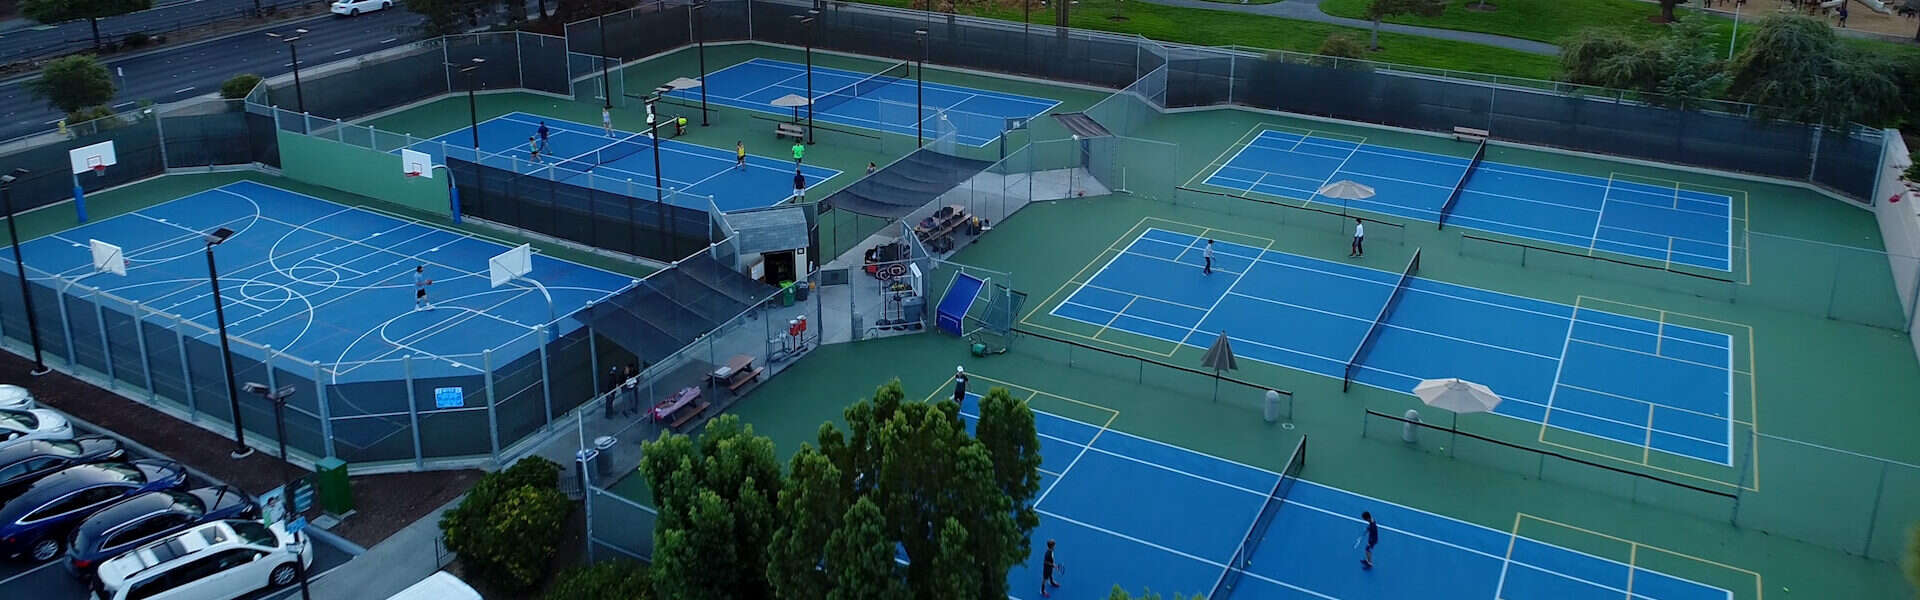 Tennis - Lifetime Activities